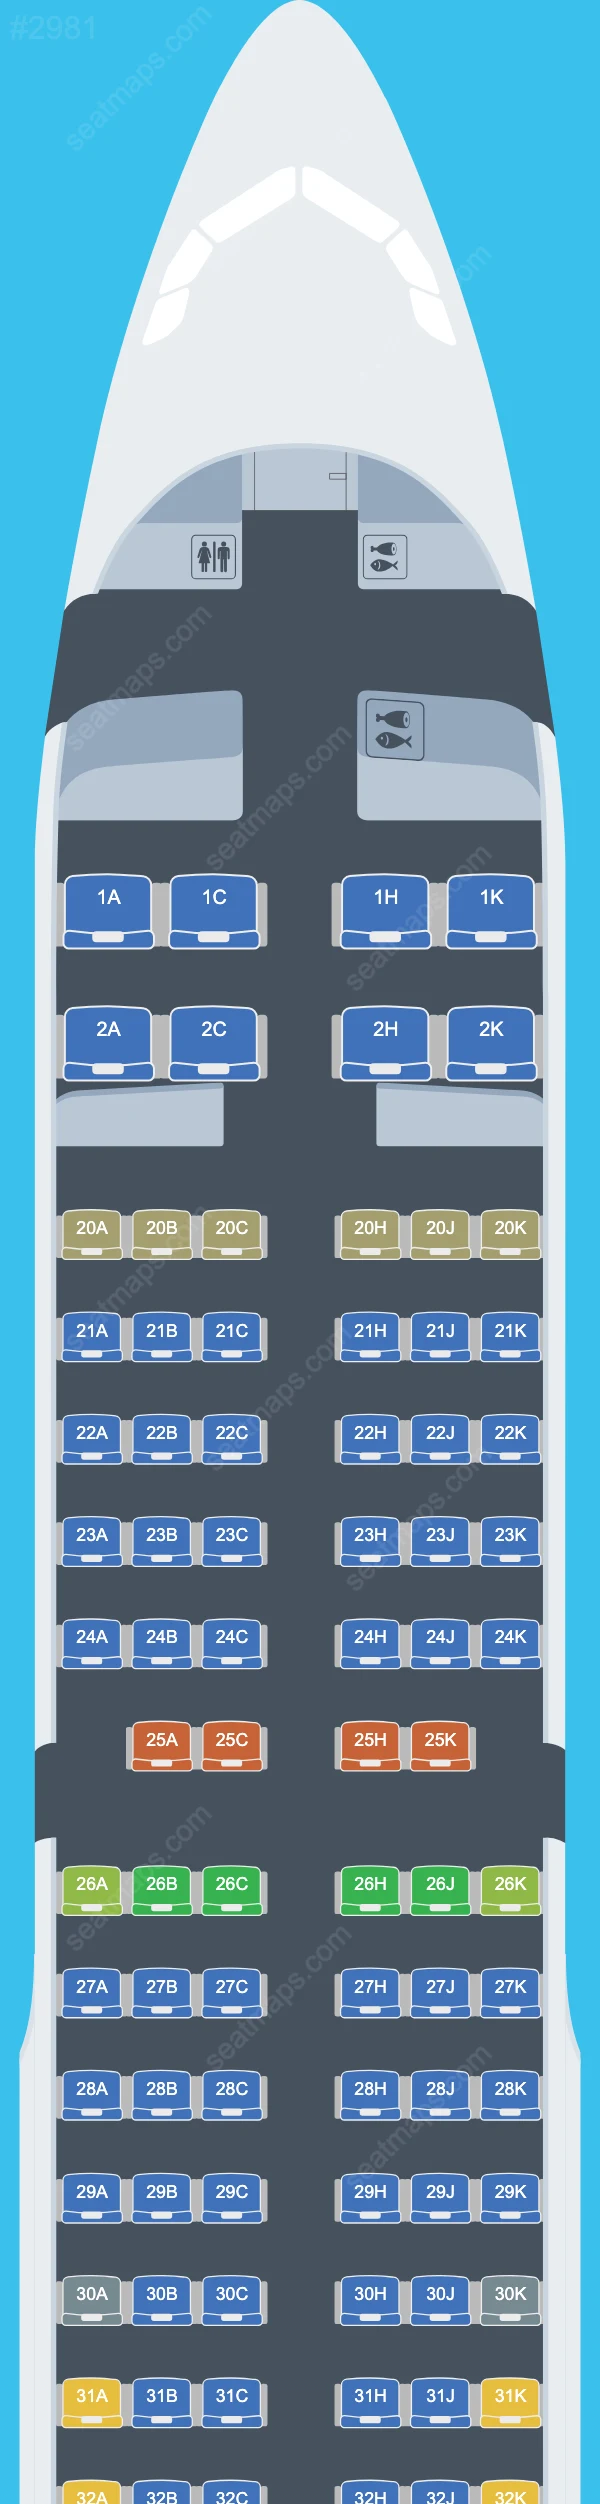 EVA Air Airbus A321 Seat Maps A321-200